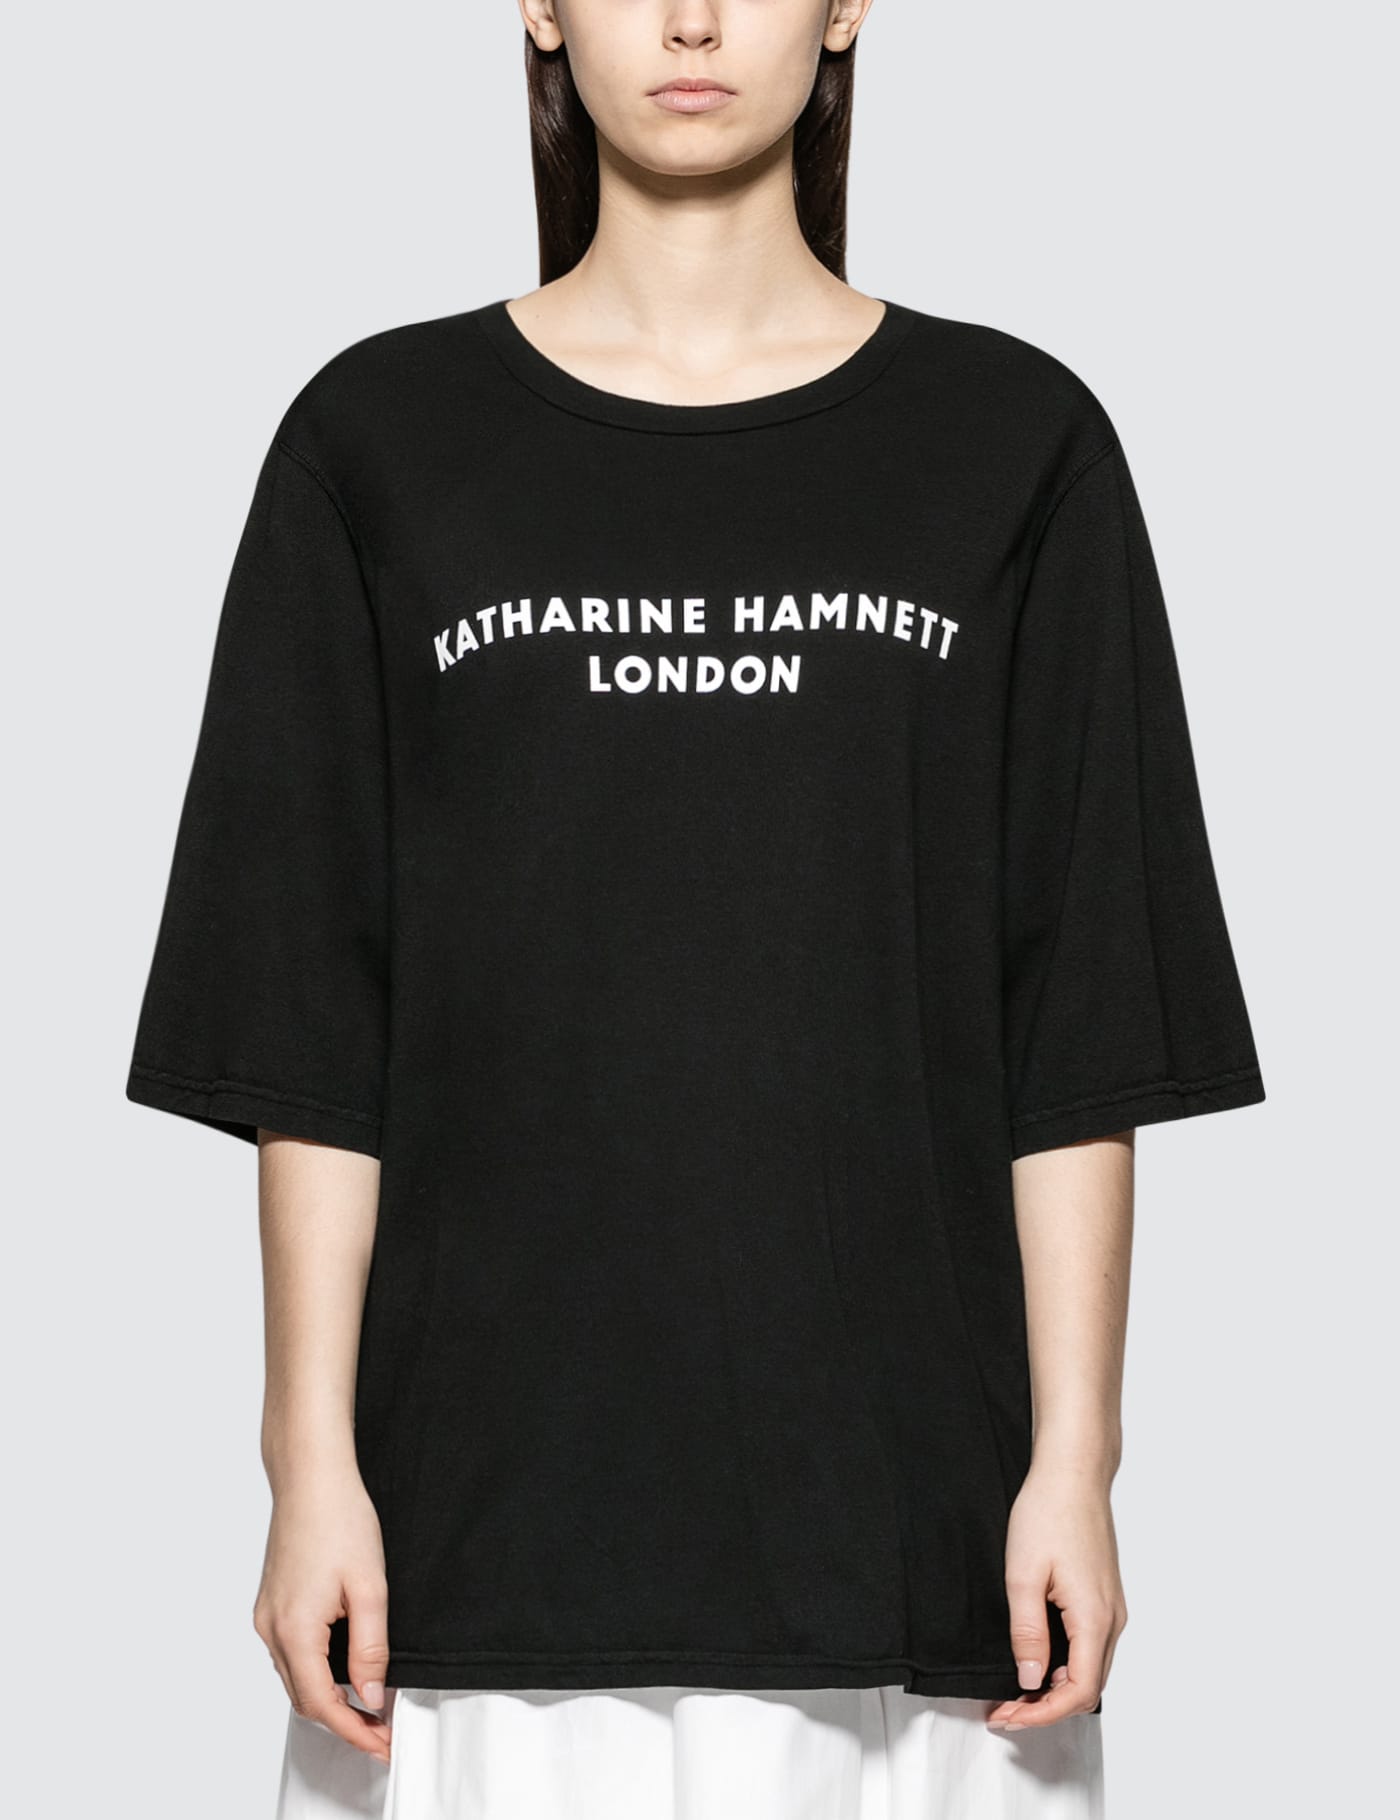 Katharine Hamnett - George Short Sleeve T-shirt | HBX - Globally